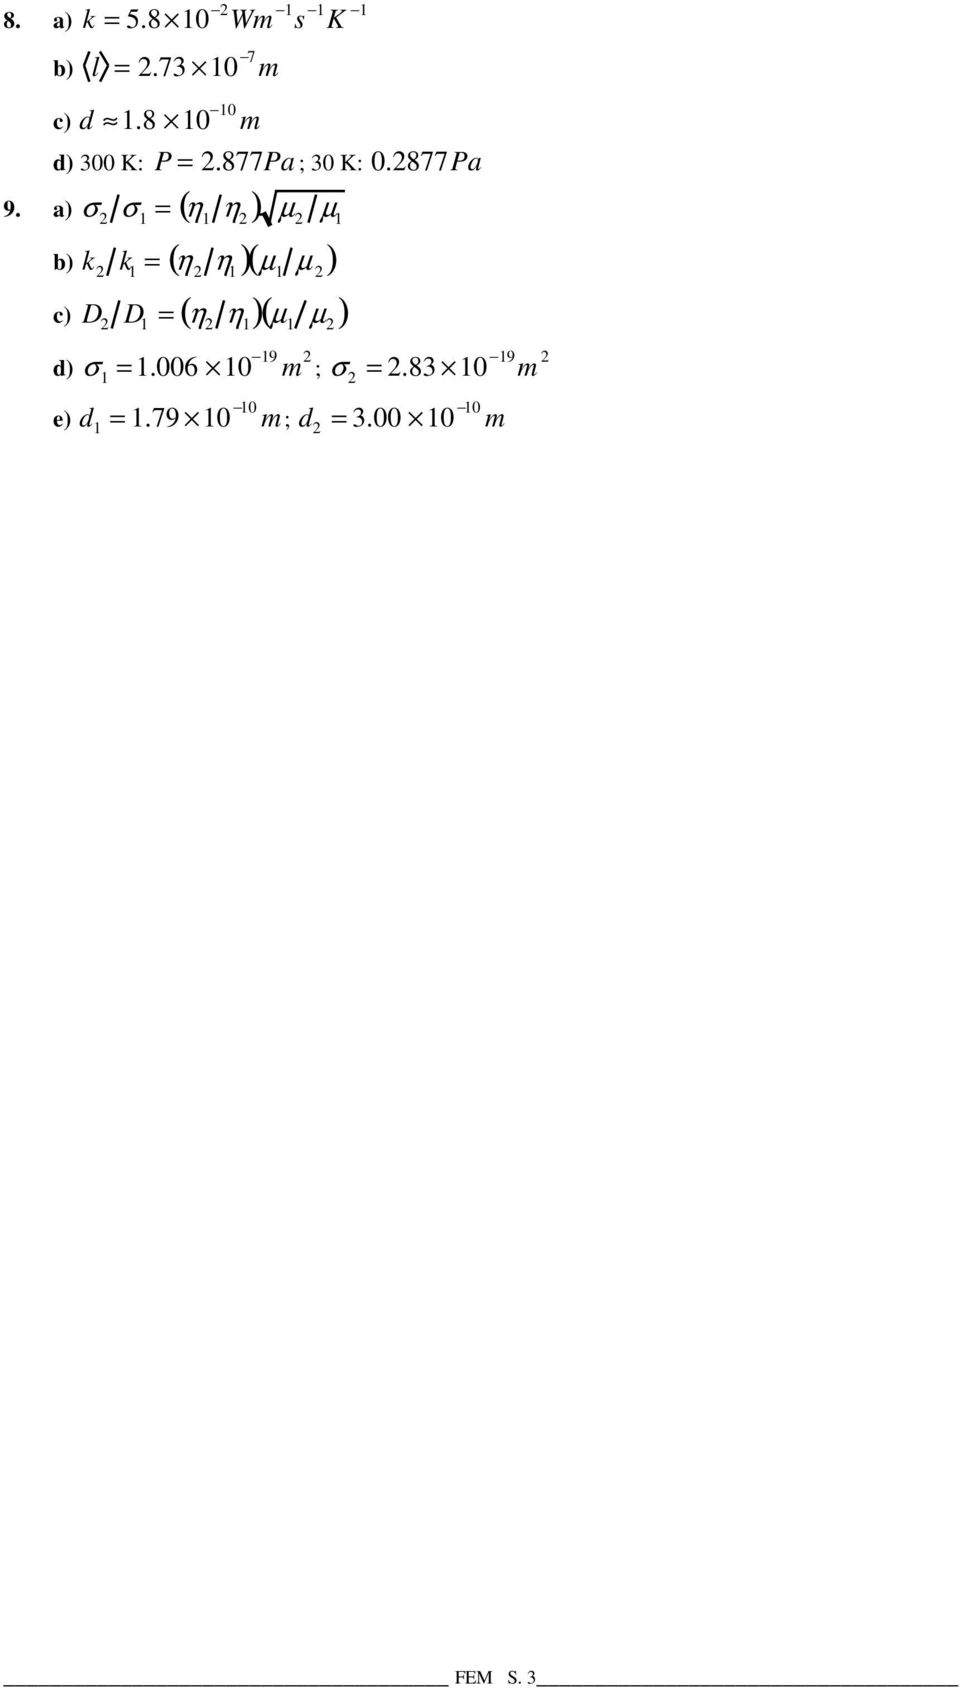 a) σ σ = ( η η ) µ µ b) k k = ( η η )( µ µ ) c) D D = ( η